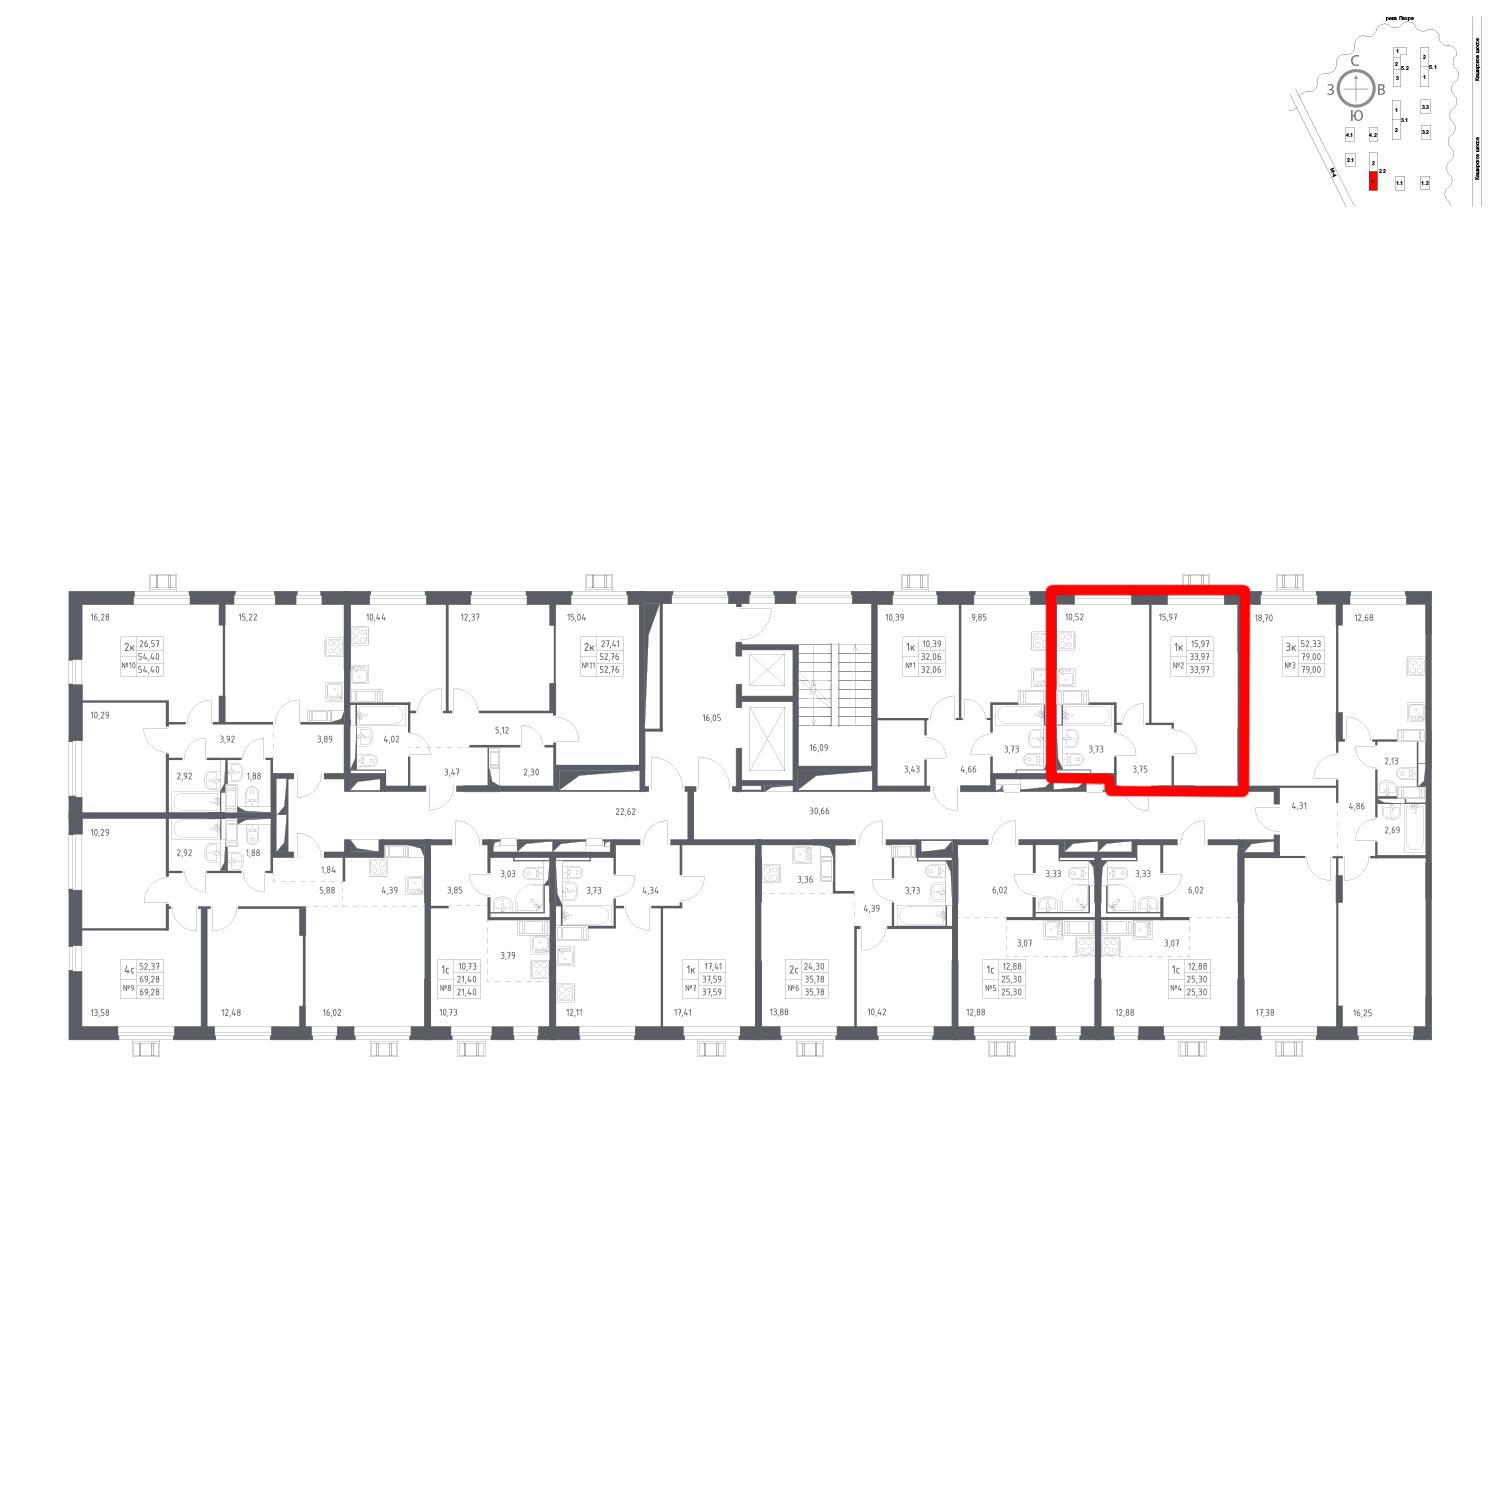 Продаётся 1-комнатная квартира в новостройке 34.0 кв.м. этаж 14/17 за 6 139 269 руб 